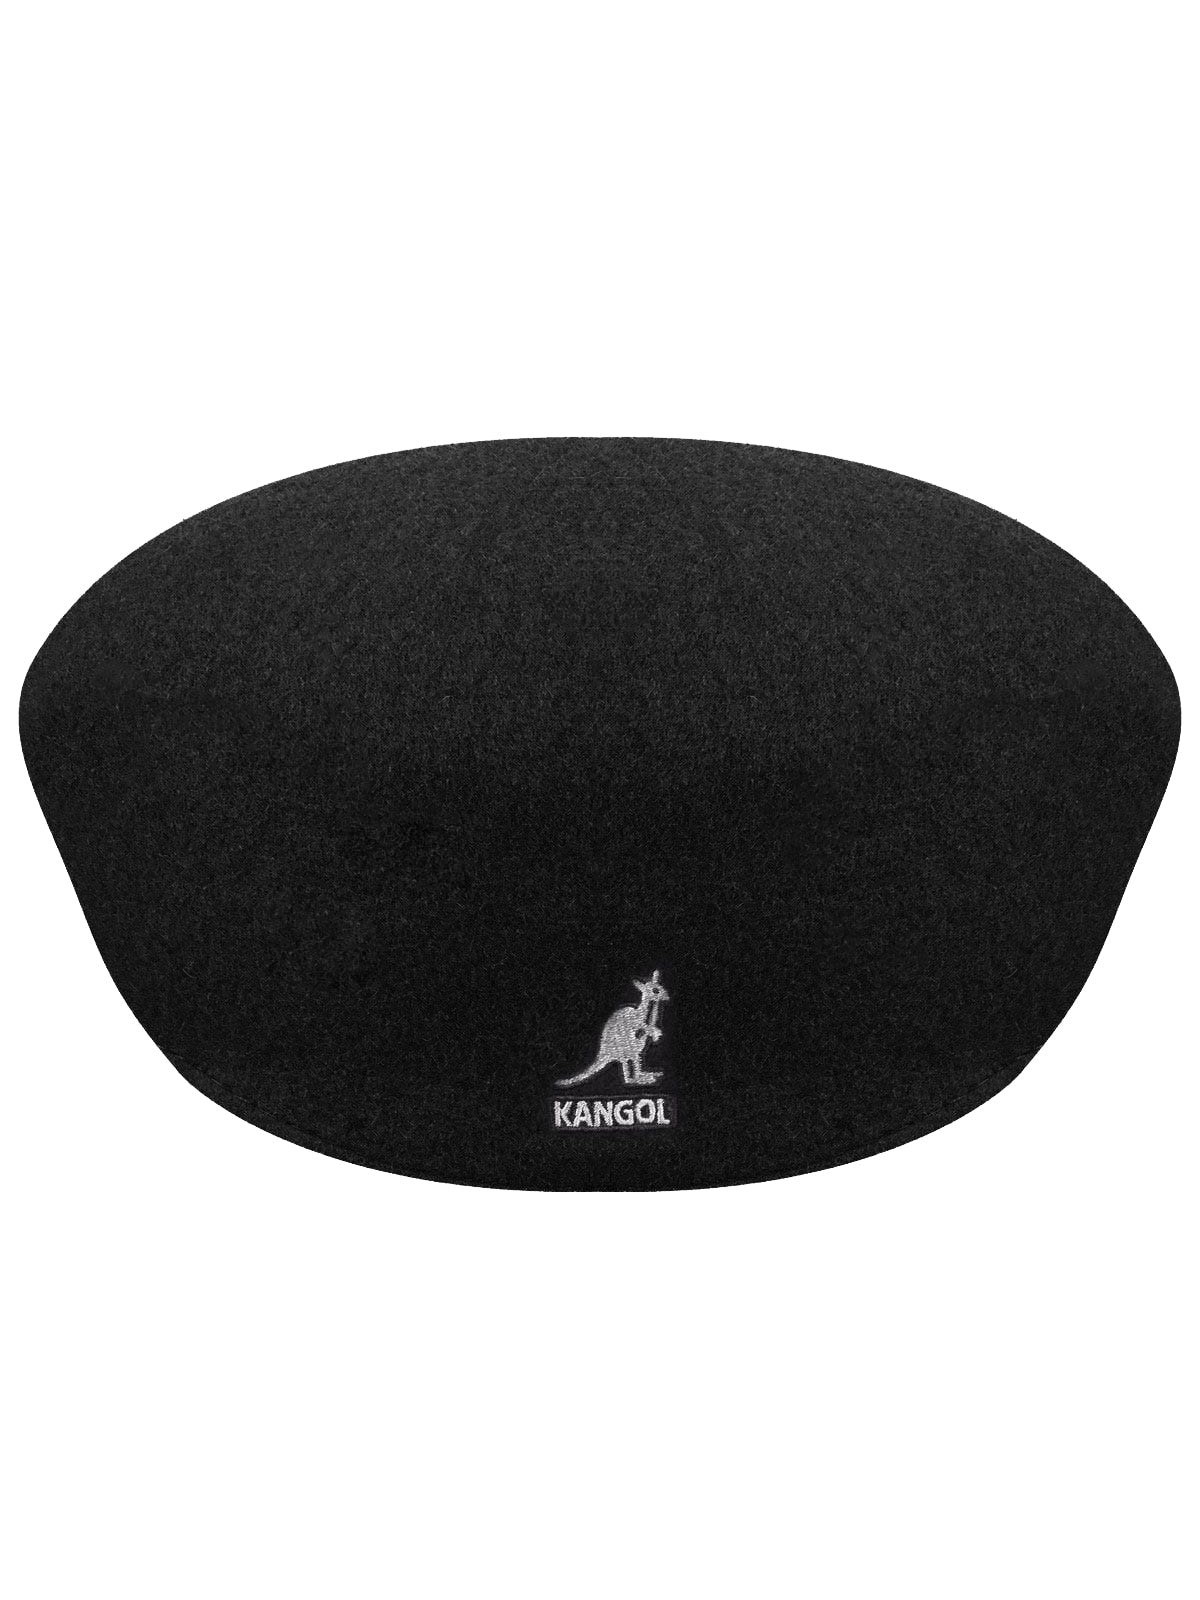 Kangol Wool 504 Cap in Black - 0